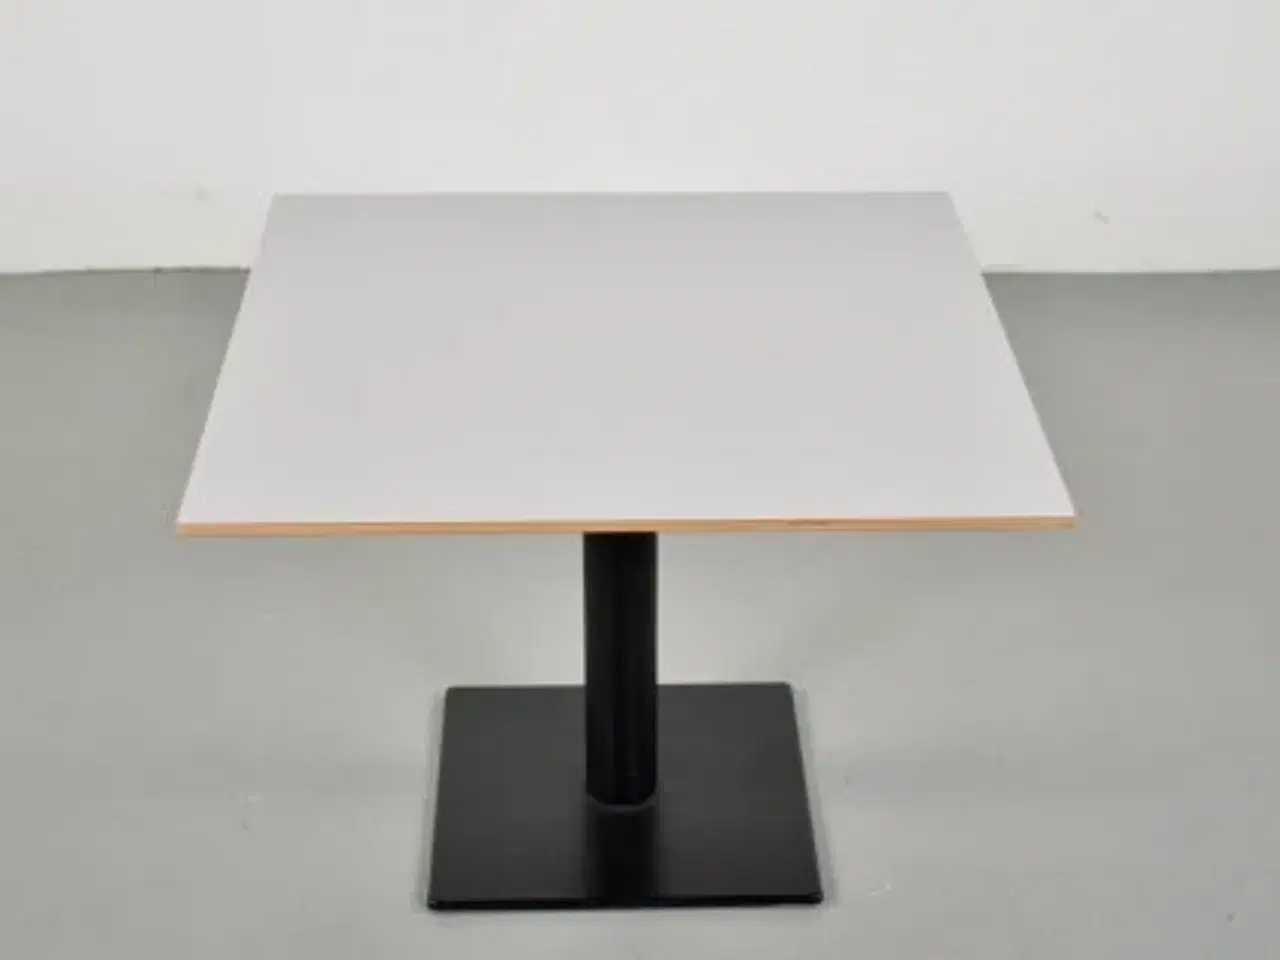 Billede 1 - Lavt cafebord fra zeta furniture med lysegrå plade og sort fod.